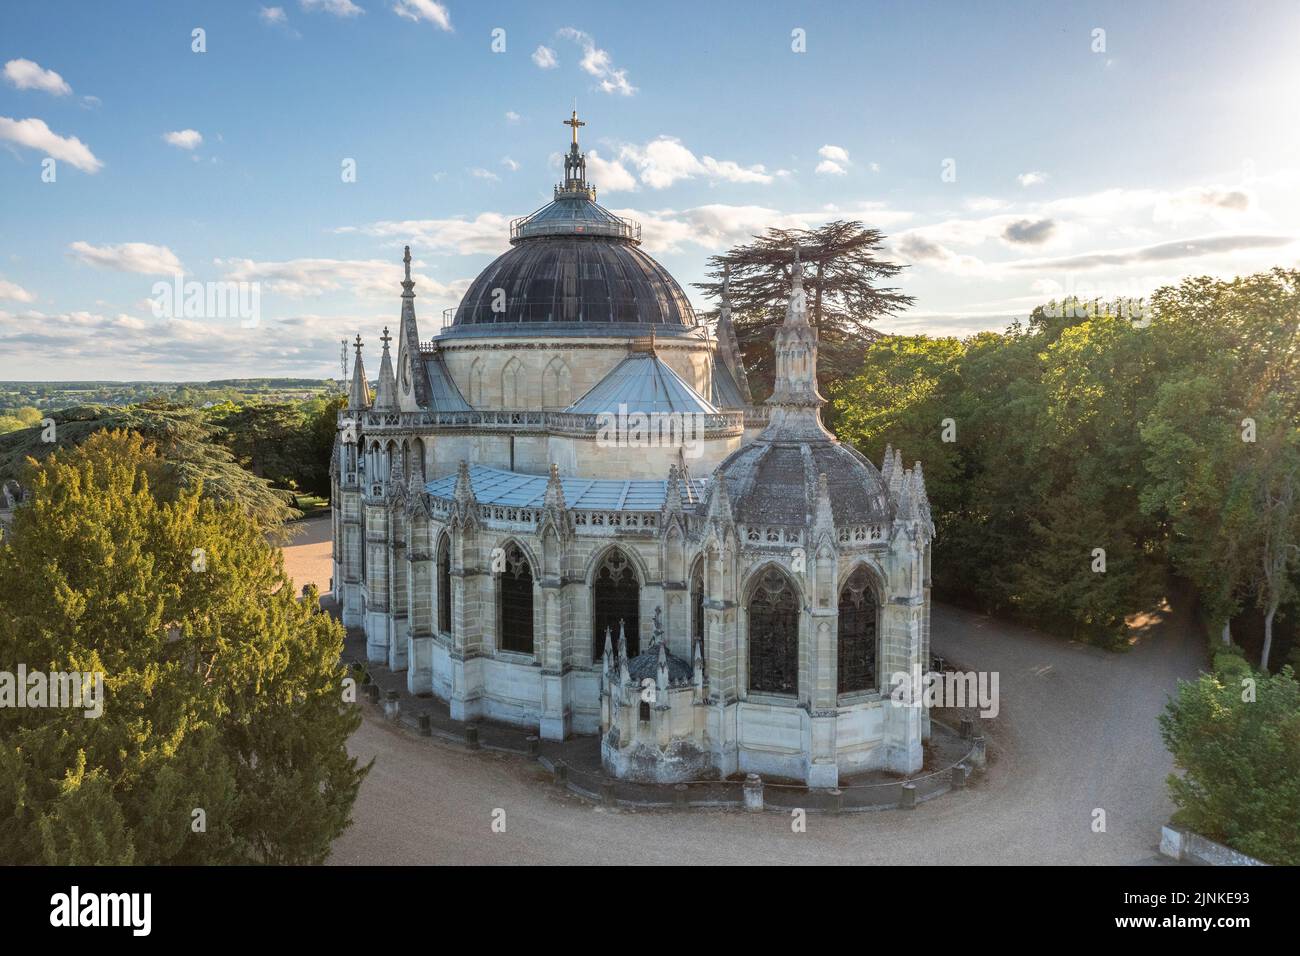 Frankreich, Eure-et-Loir, Dreux, Saint Louis königliche Kapelle Nekropole der Familie Orleans befindet sich in der Einschließung des Chateau de Dreux (Luftaufnahme vi Stockfoto